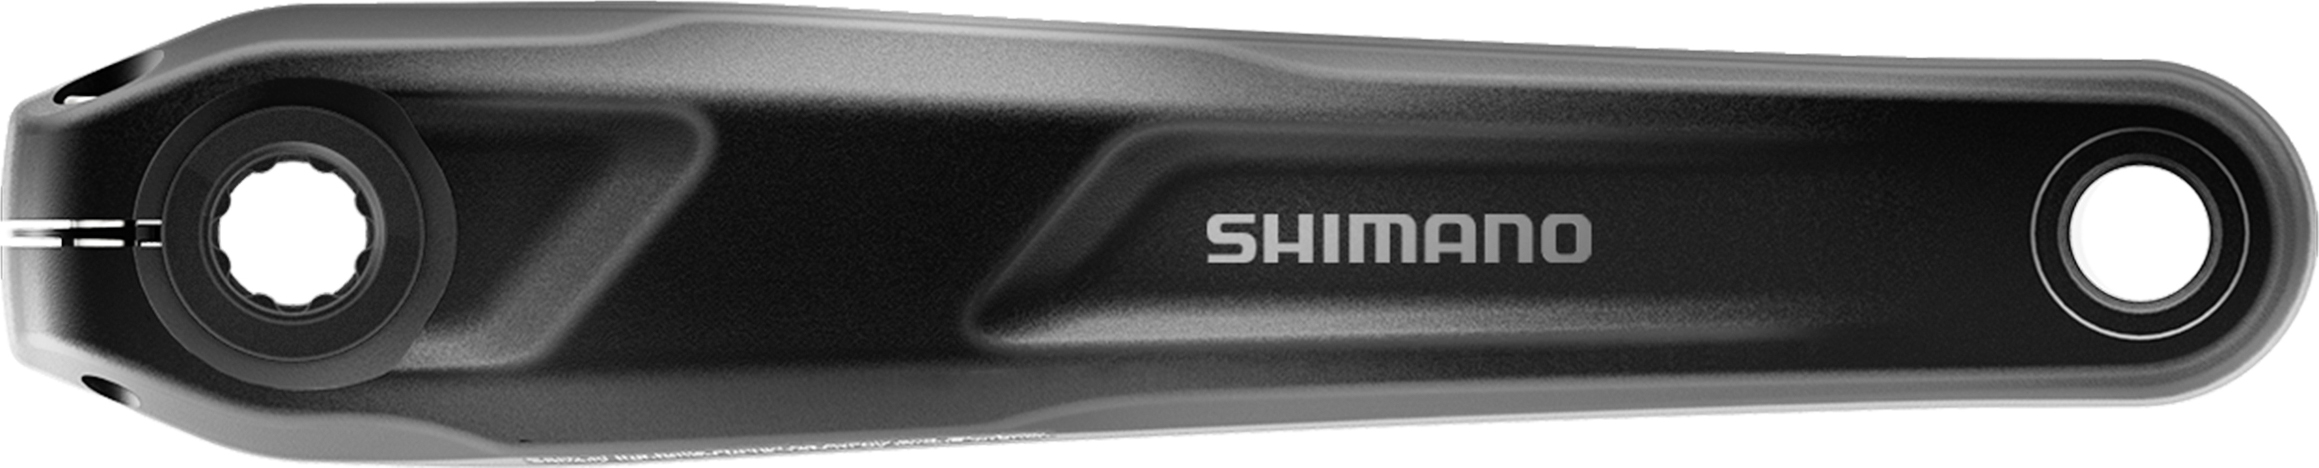 SHIMANO STEPS kliky FC-EM600 jednopřevodník 170 mm bez přev. bez krytu bal